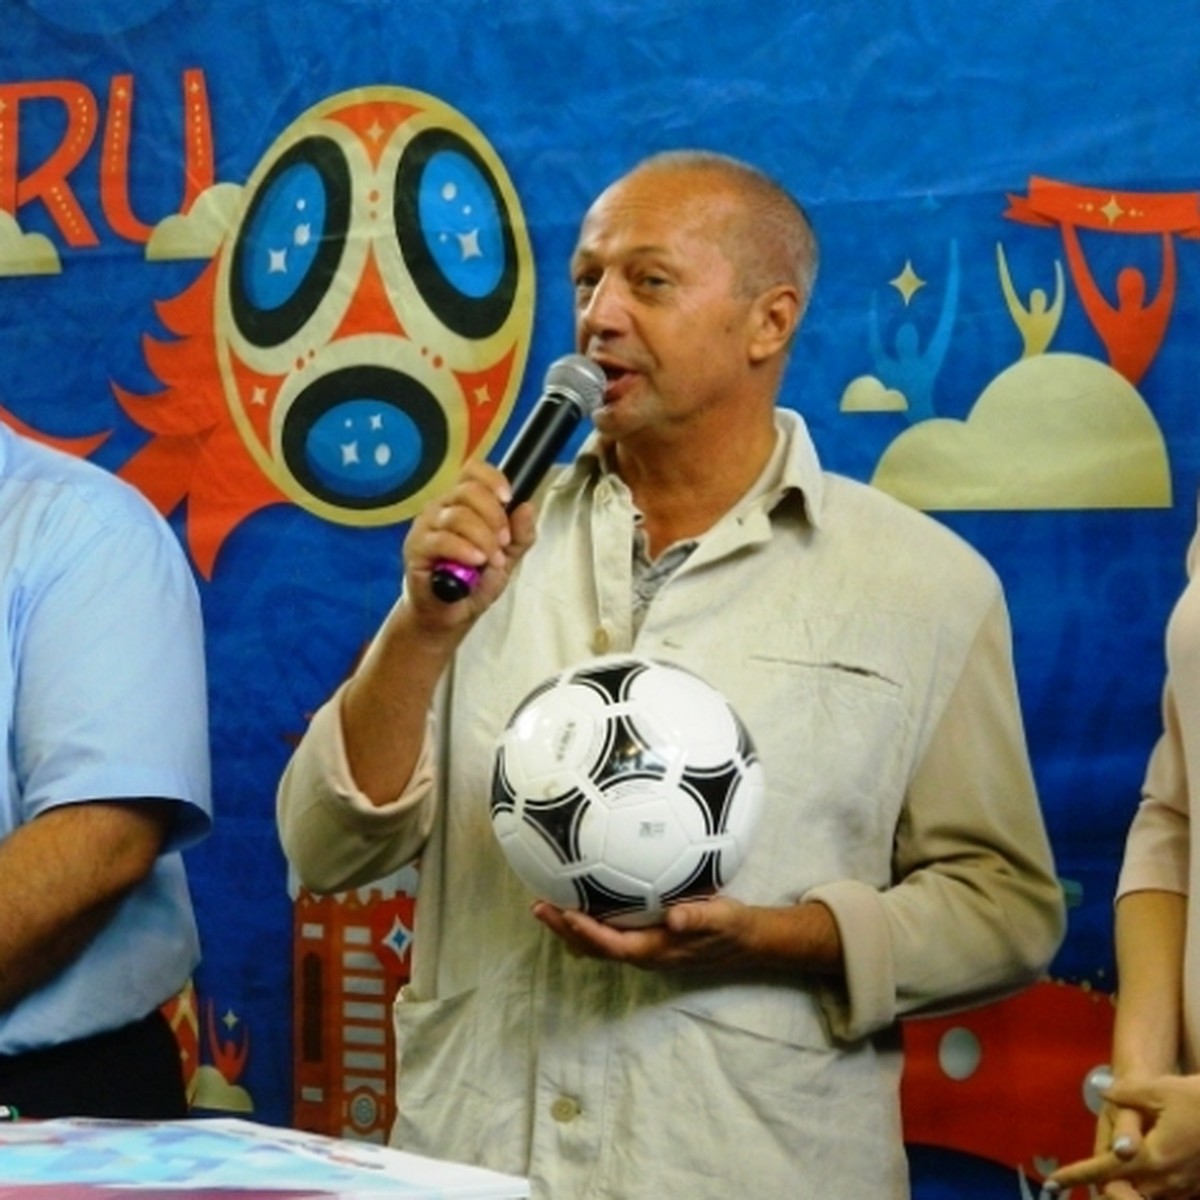 В волгоградской гимназии первого сентября прошел «Урок футбола» - KP.RU